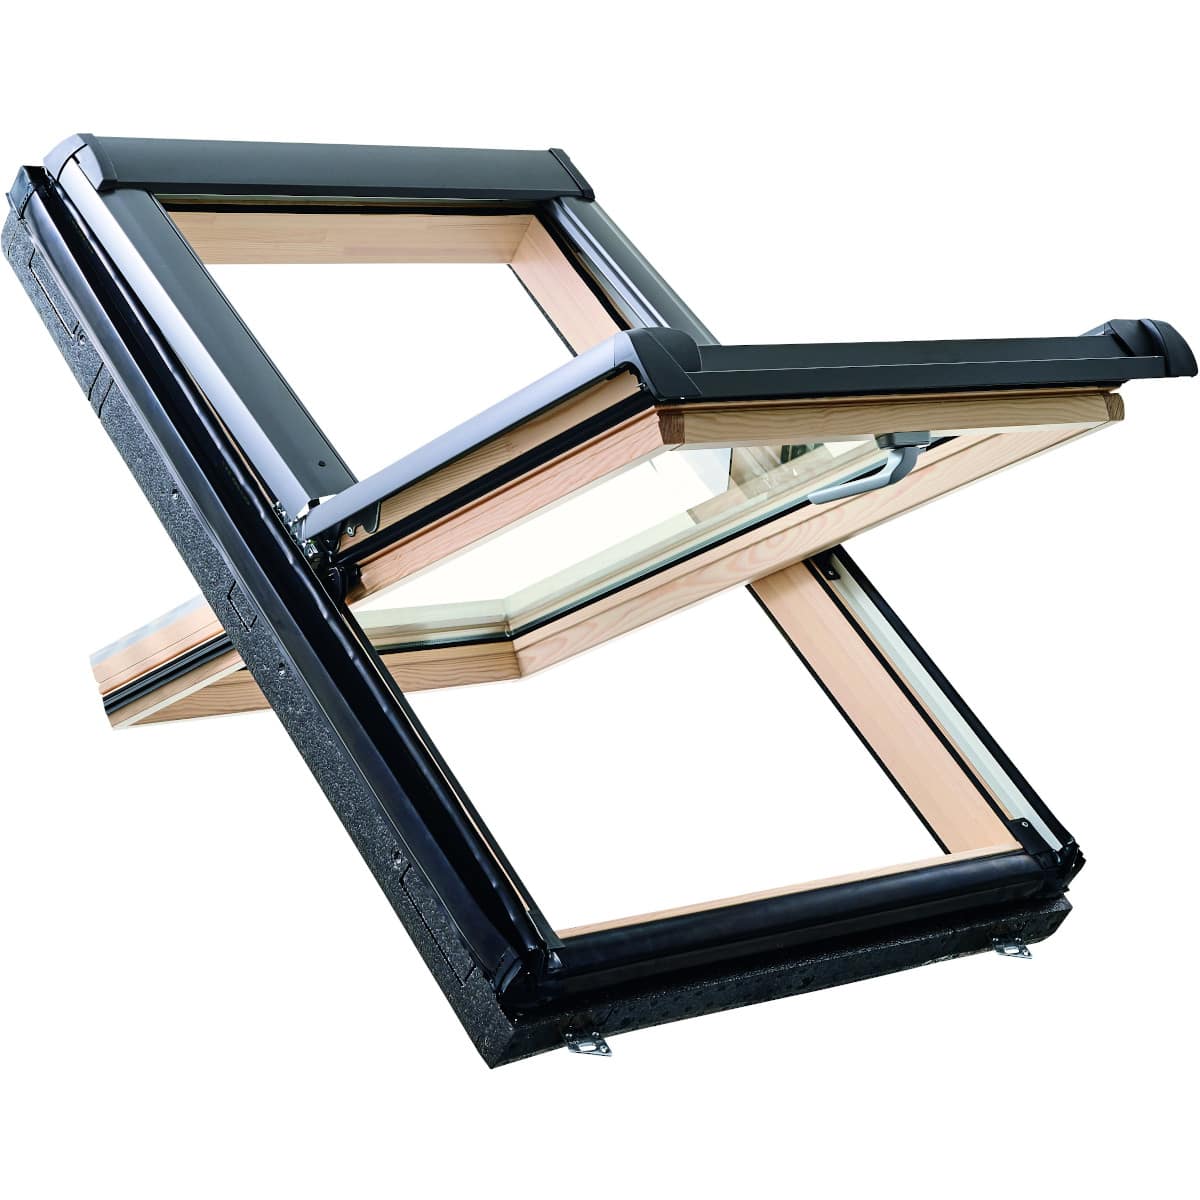 Окно мансардное деревянное с нижней ручкой Roto R48 H200. 1 камерный стеклопакет. ThermoBlock WD.